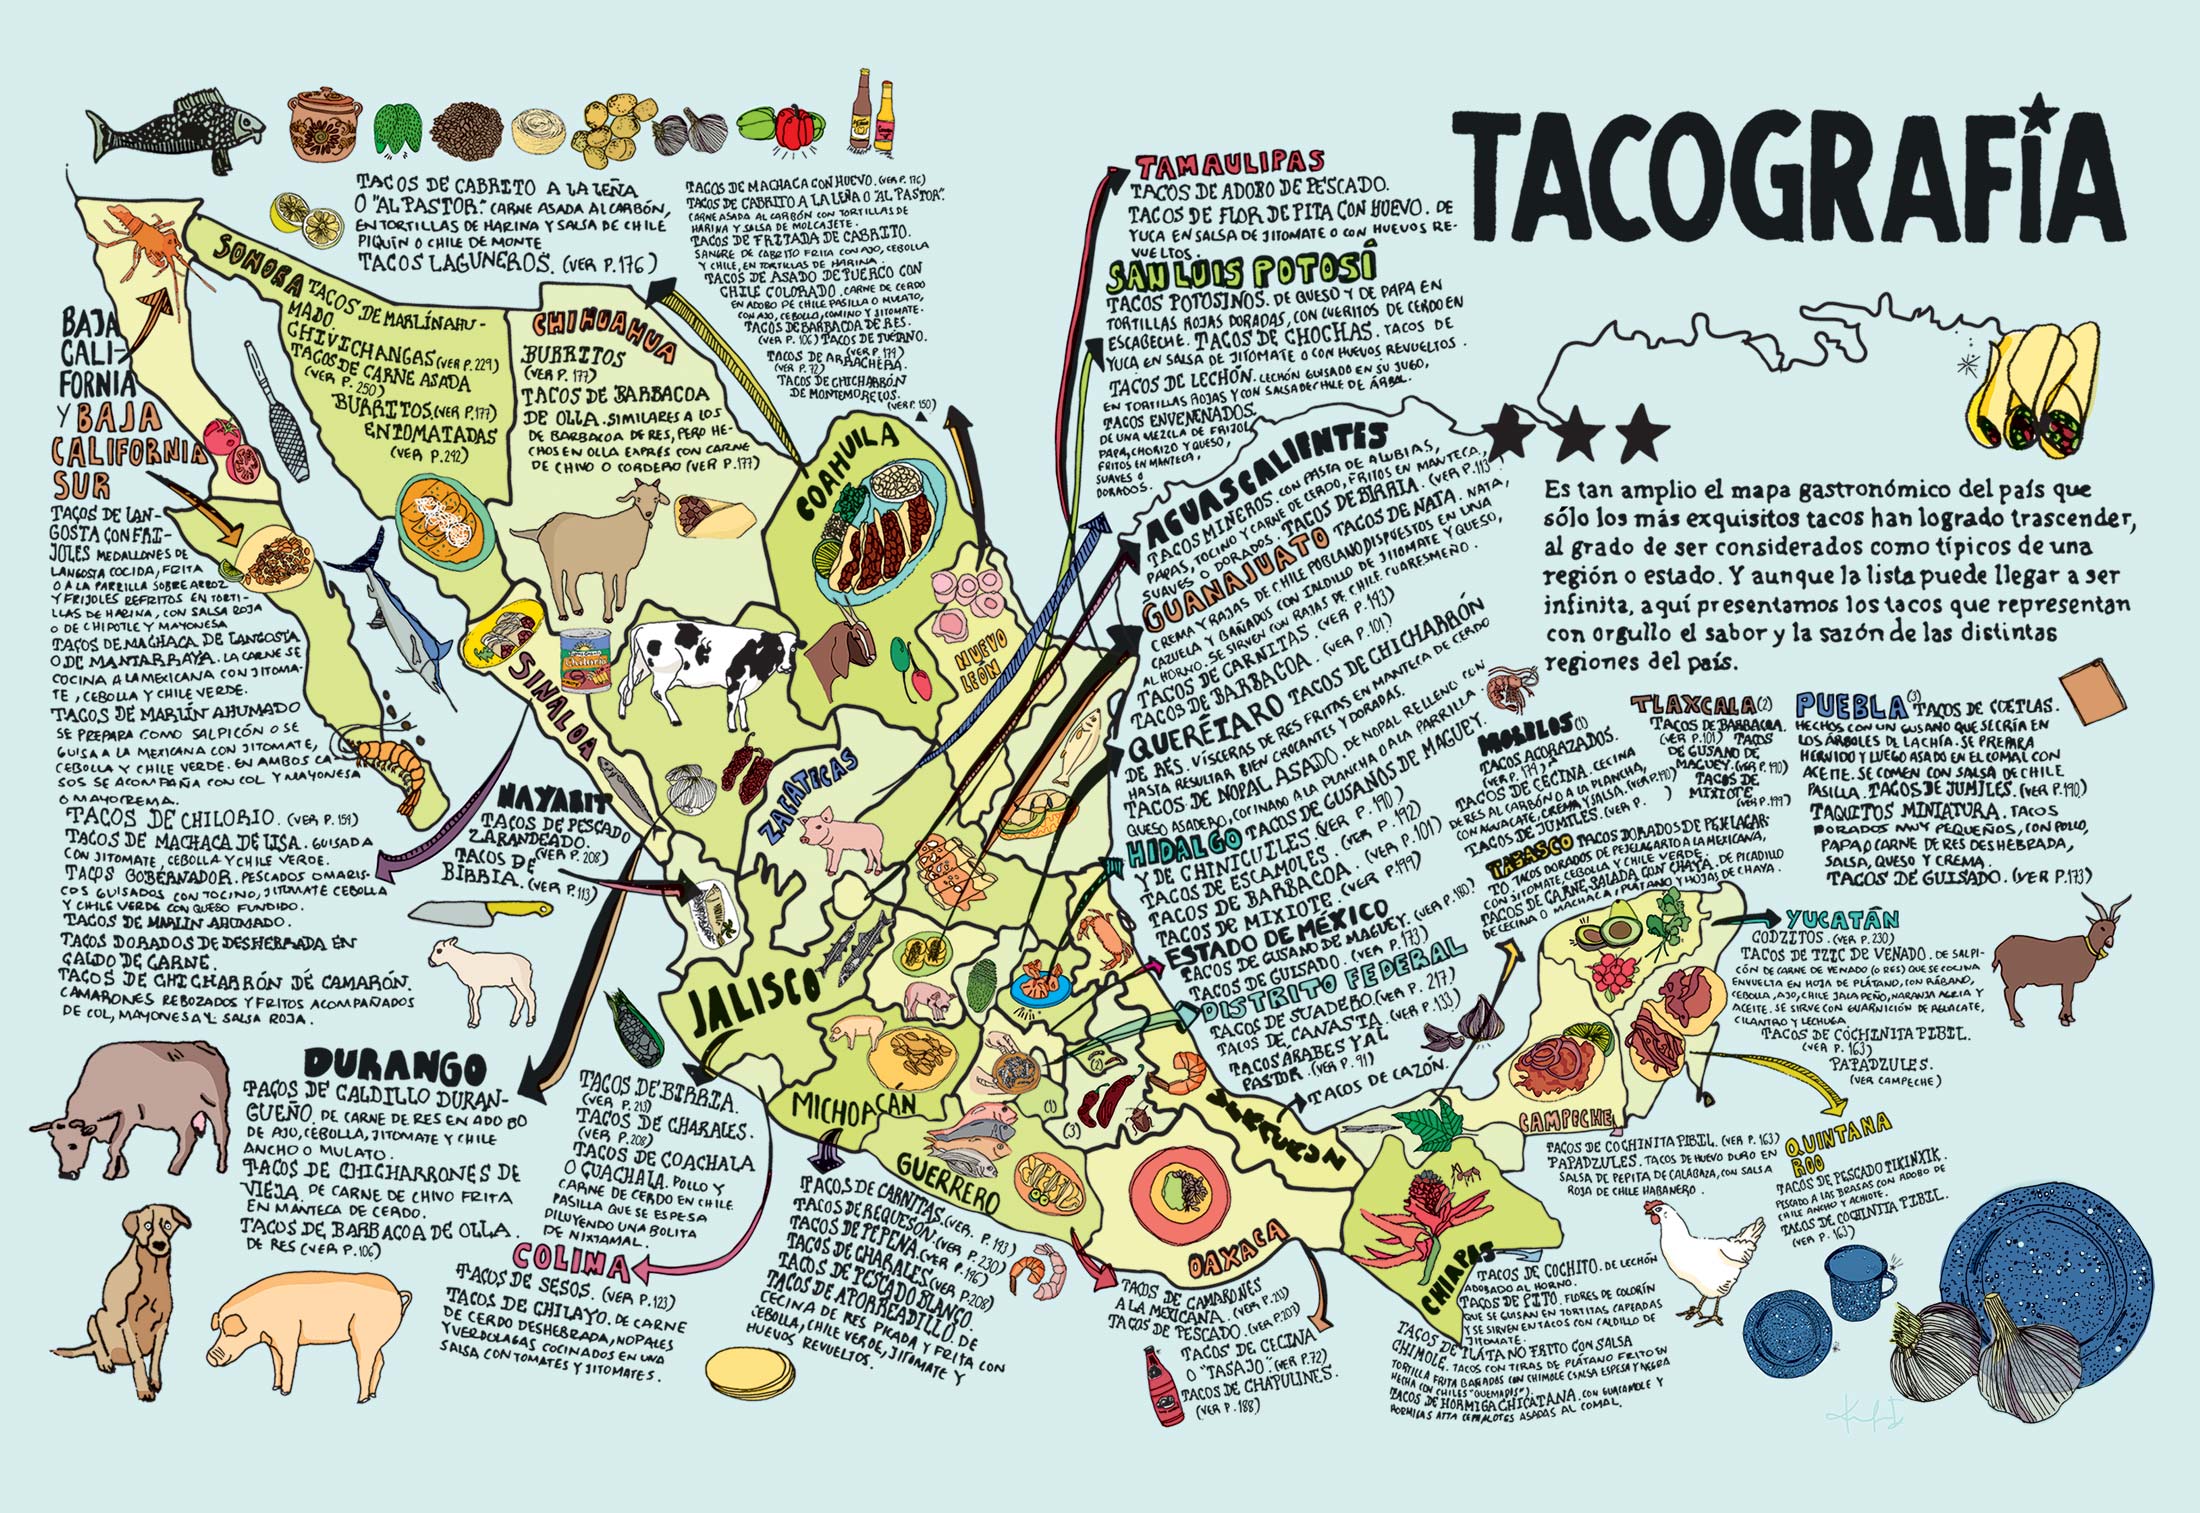 Regional varieties of Mexican tacos